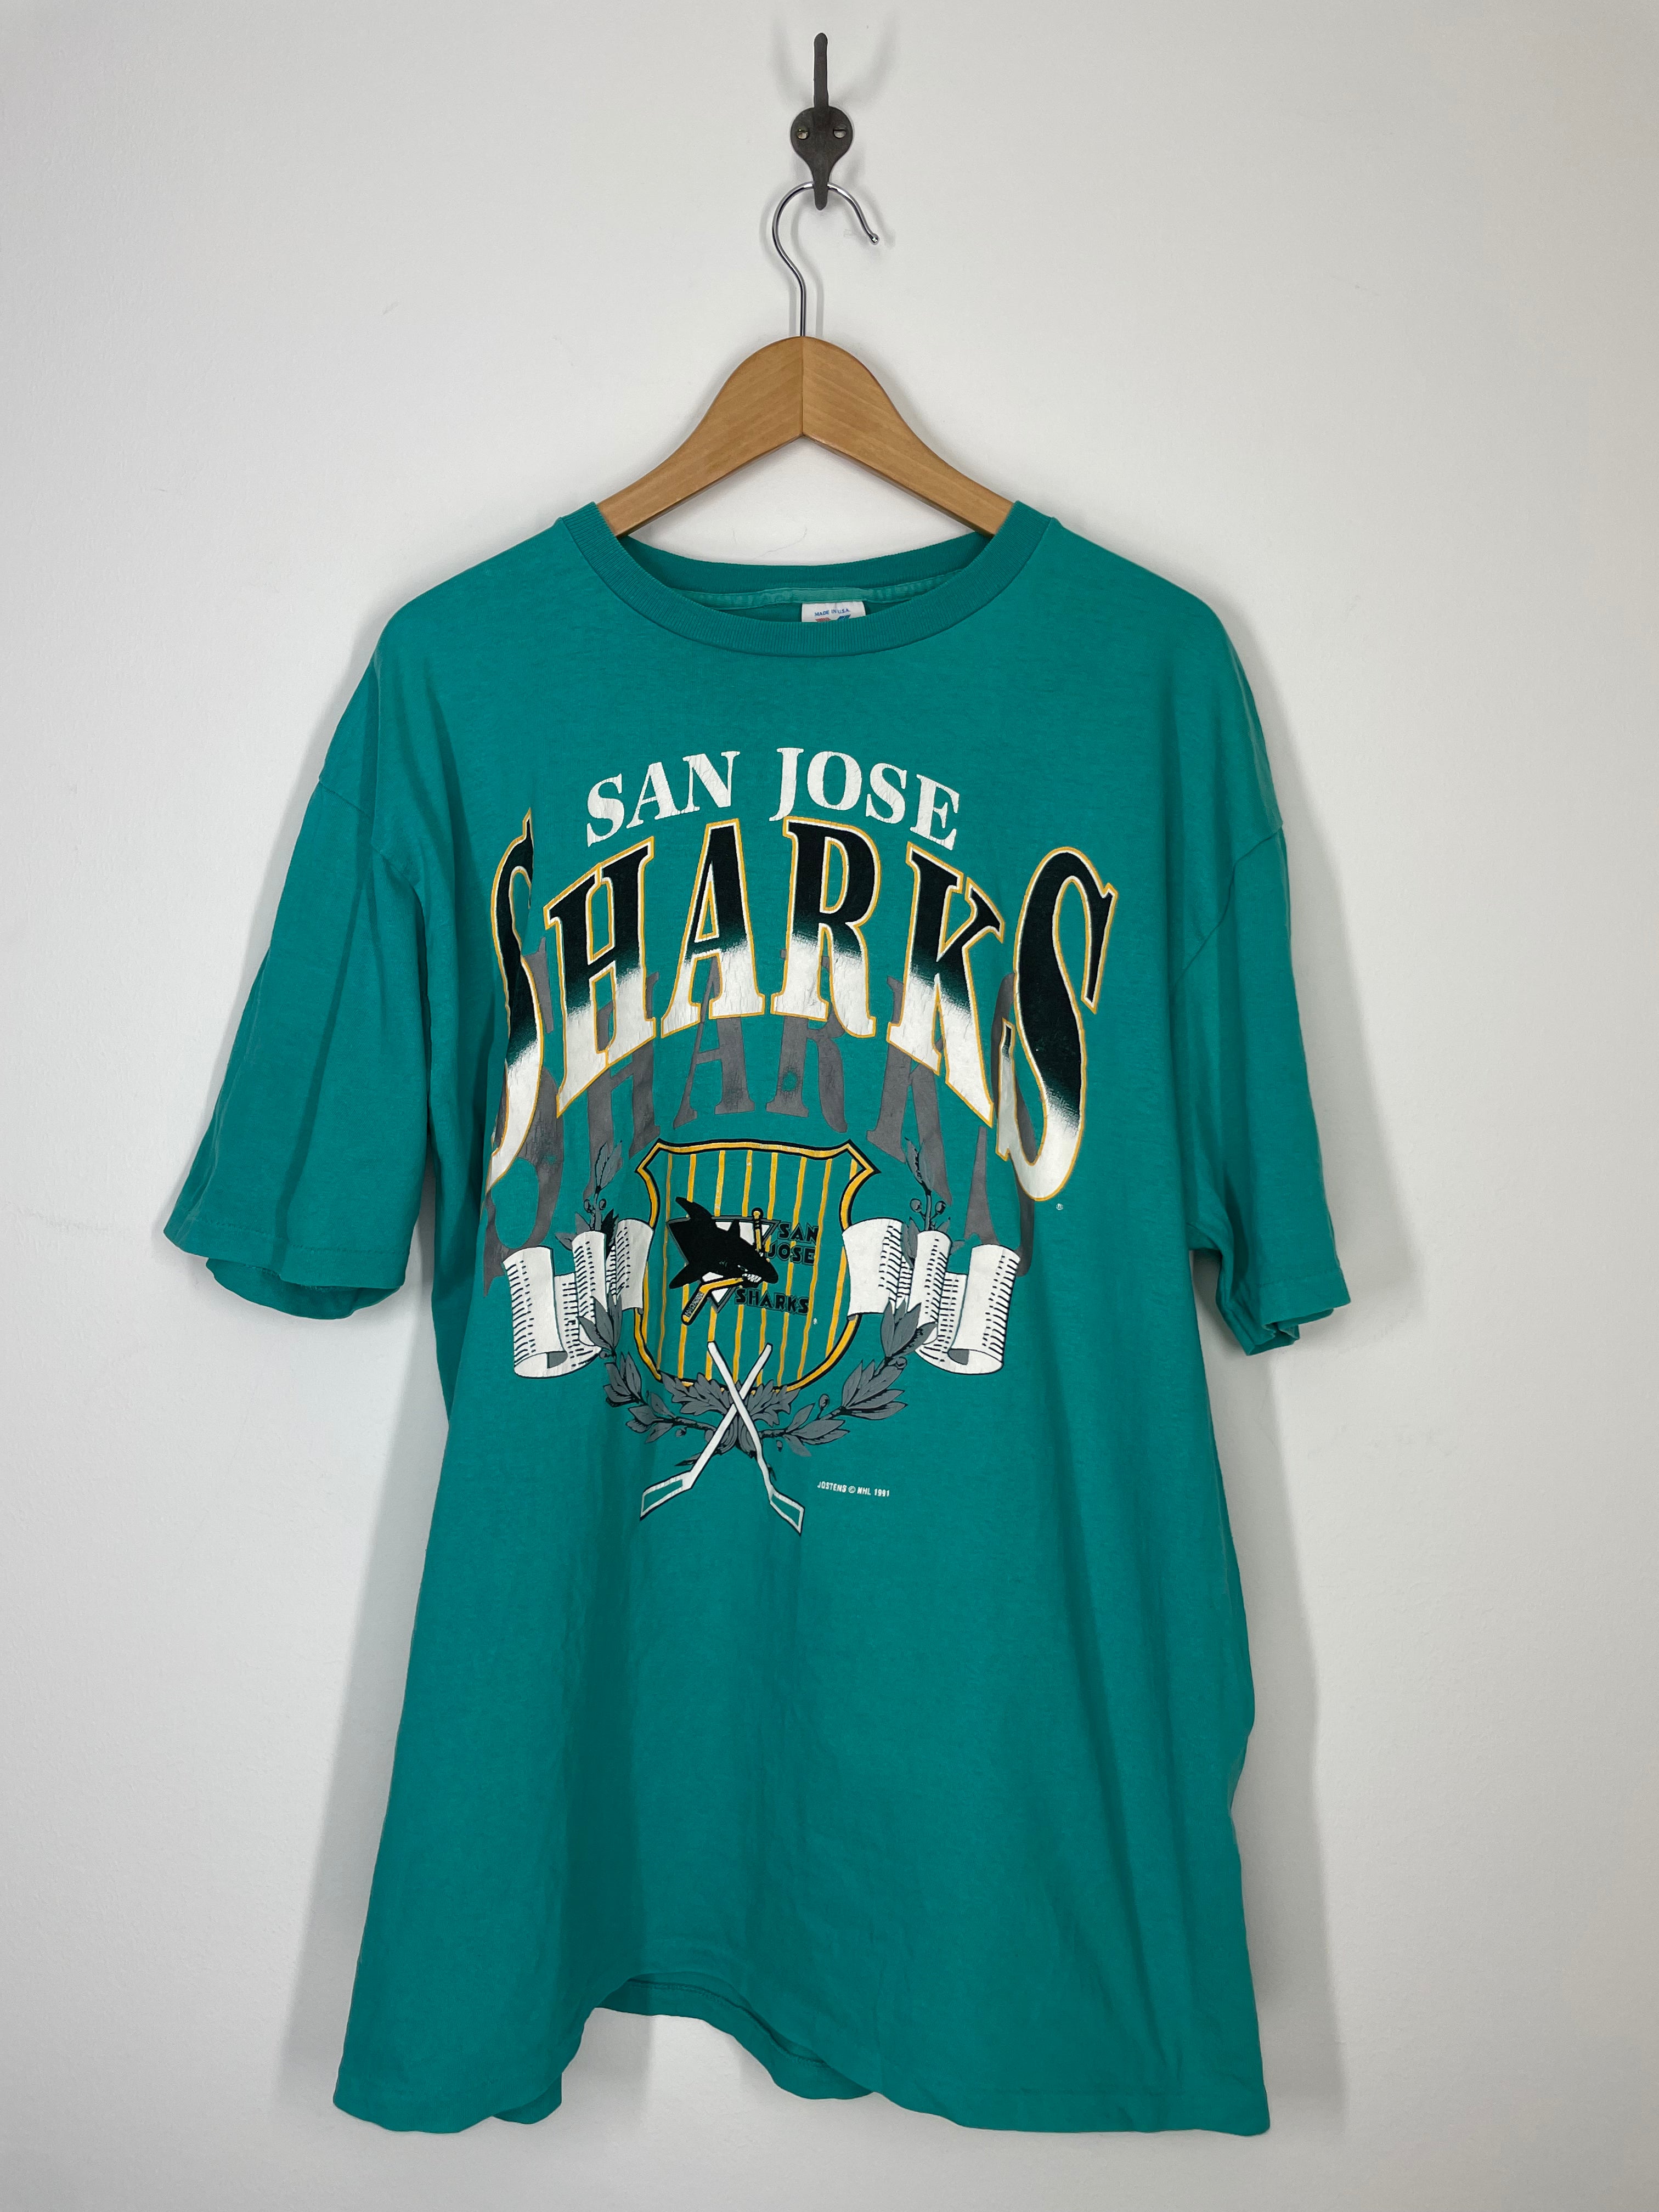 Vintage 1991 San Jose Sharks Hockey Sweatshirt